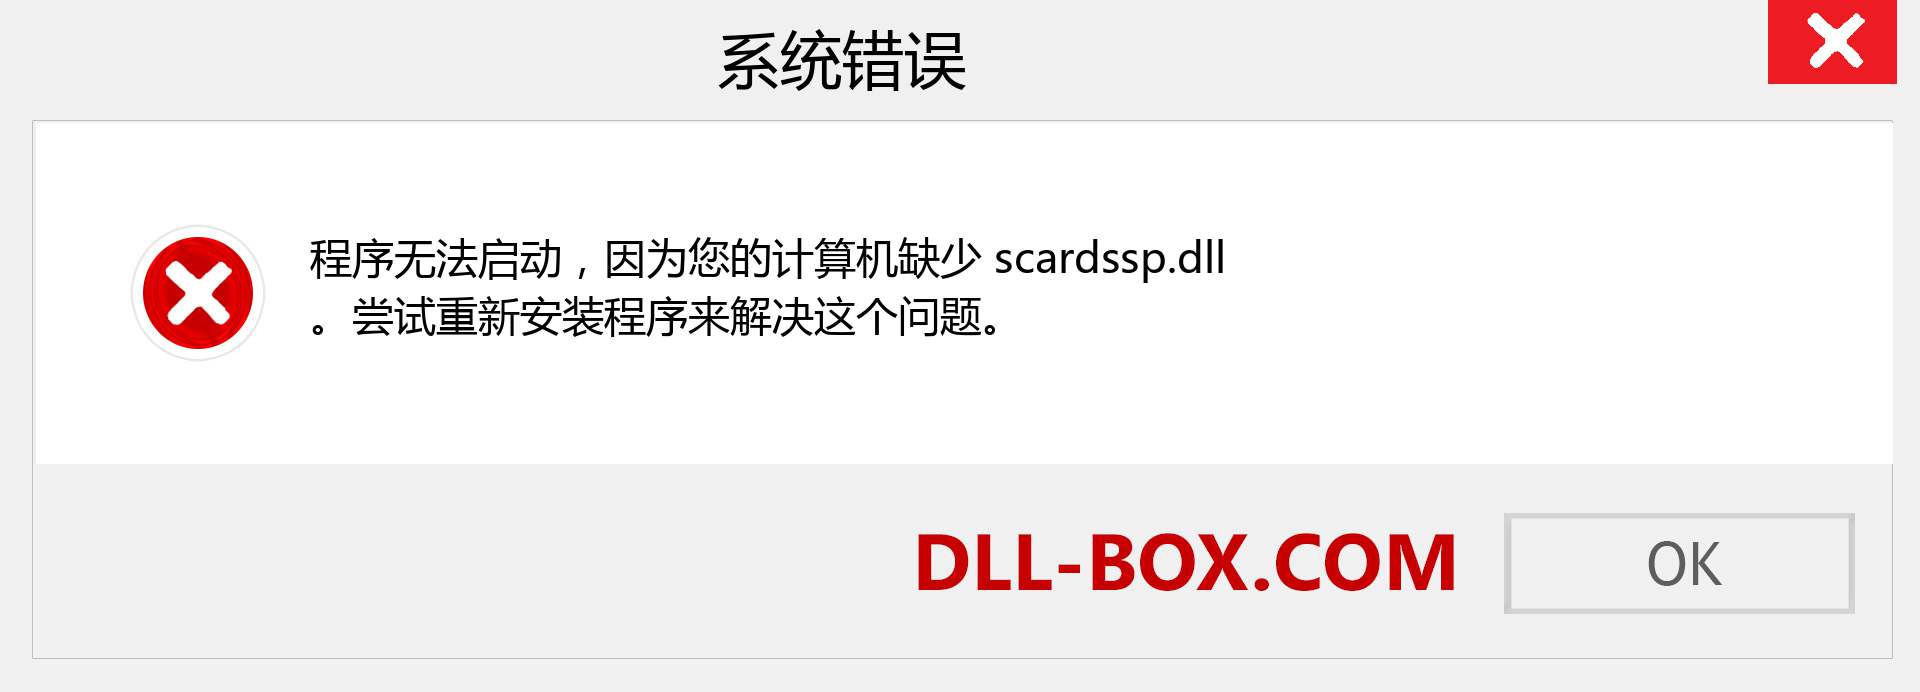 scardssp.dll 文件丢失？。 适用于 Windows 7、8、10 的下载 - 修复 Windows、照片、图像上的 scardssp dll 丢失错误